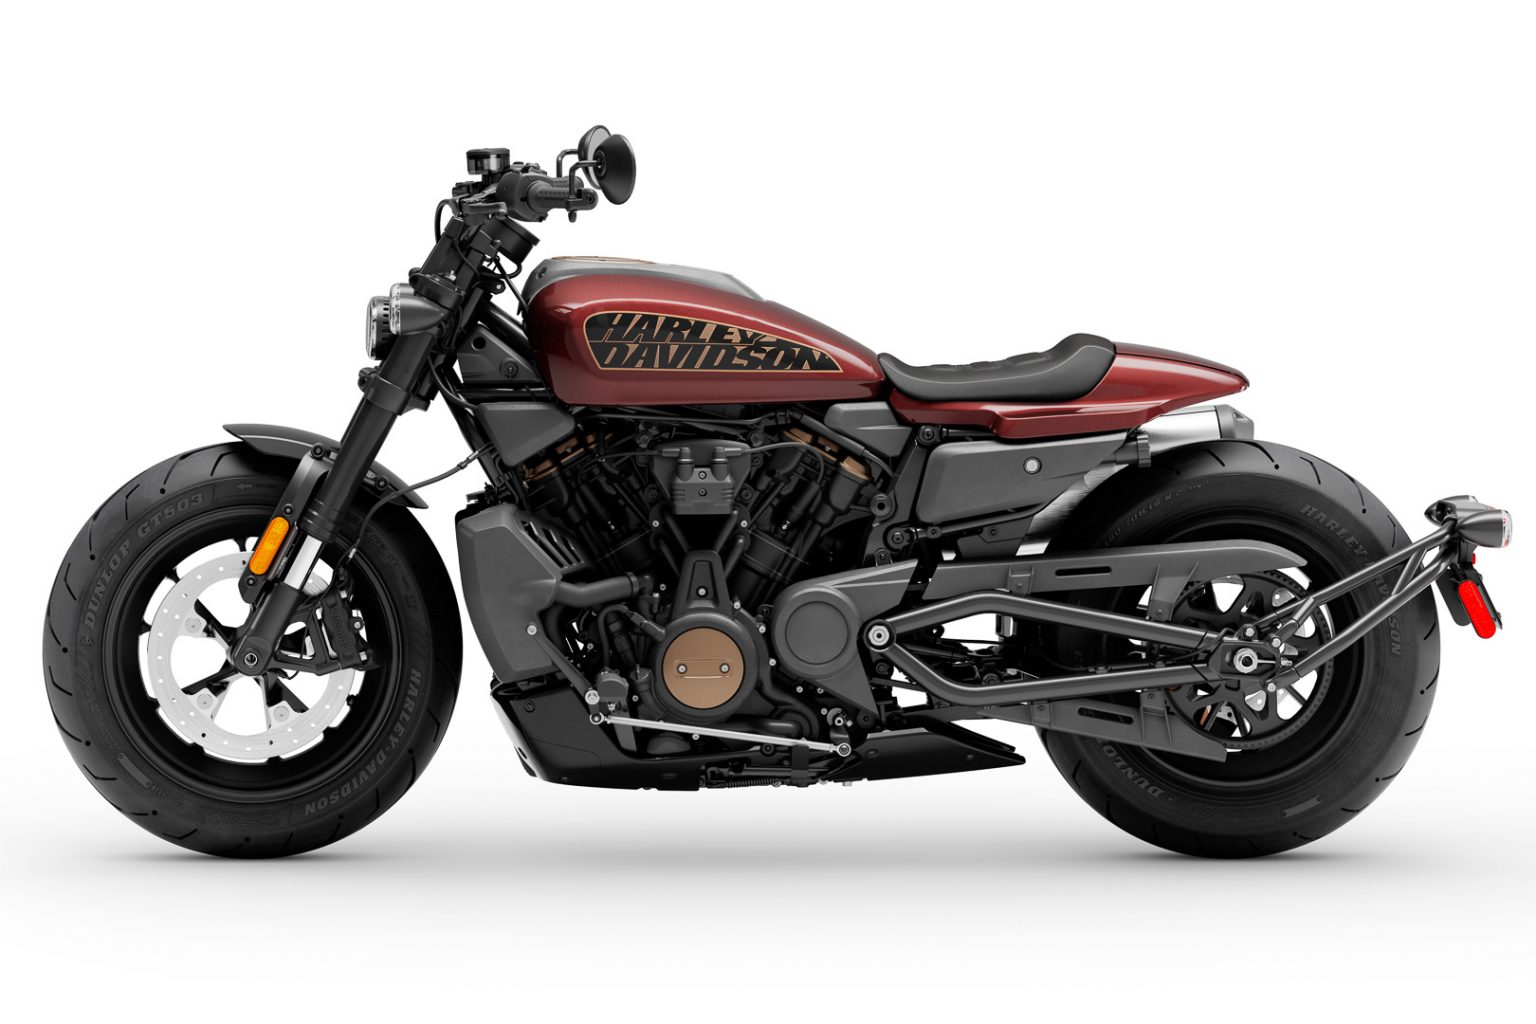 Harley-Davidson Sportster S 2021 ngập tràn công nghệ với đèn full LED, màn hình TFT 4', hỗ trợ kết nối bluetooth, 4 chế độ lái tùy chỉnh với các gói an toàn tiêu chuẩn của Harley-Davidson